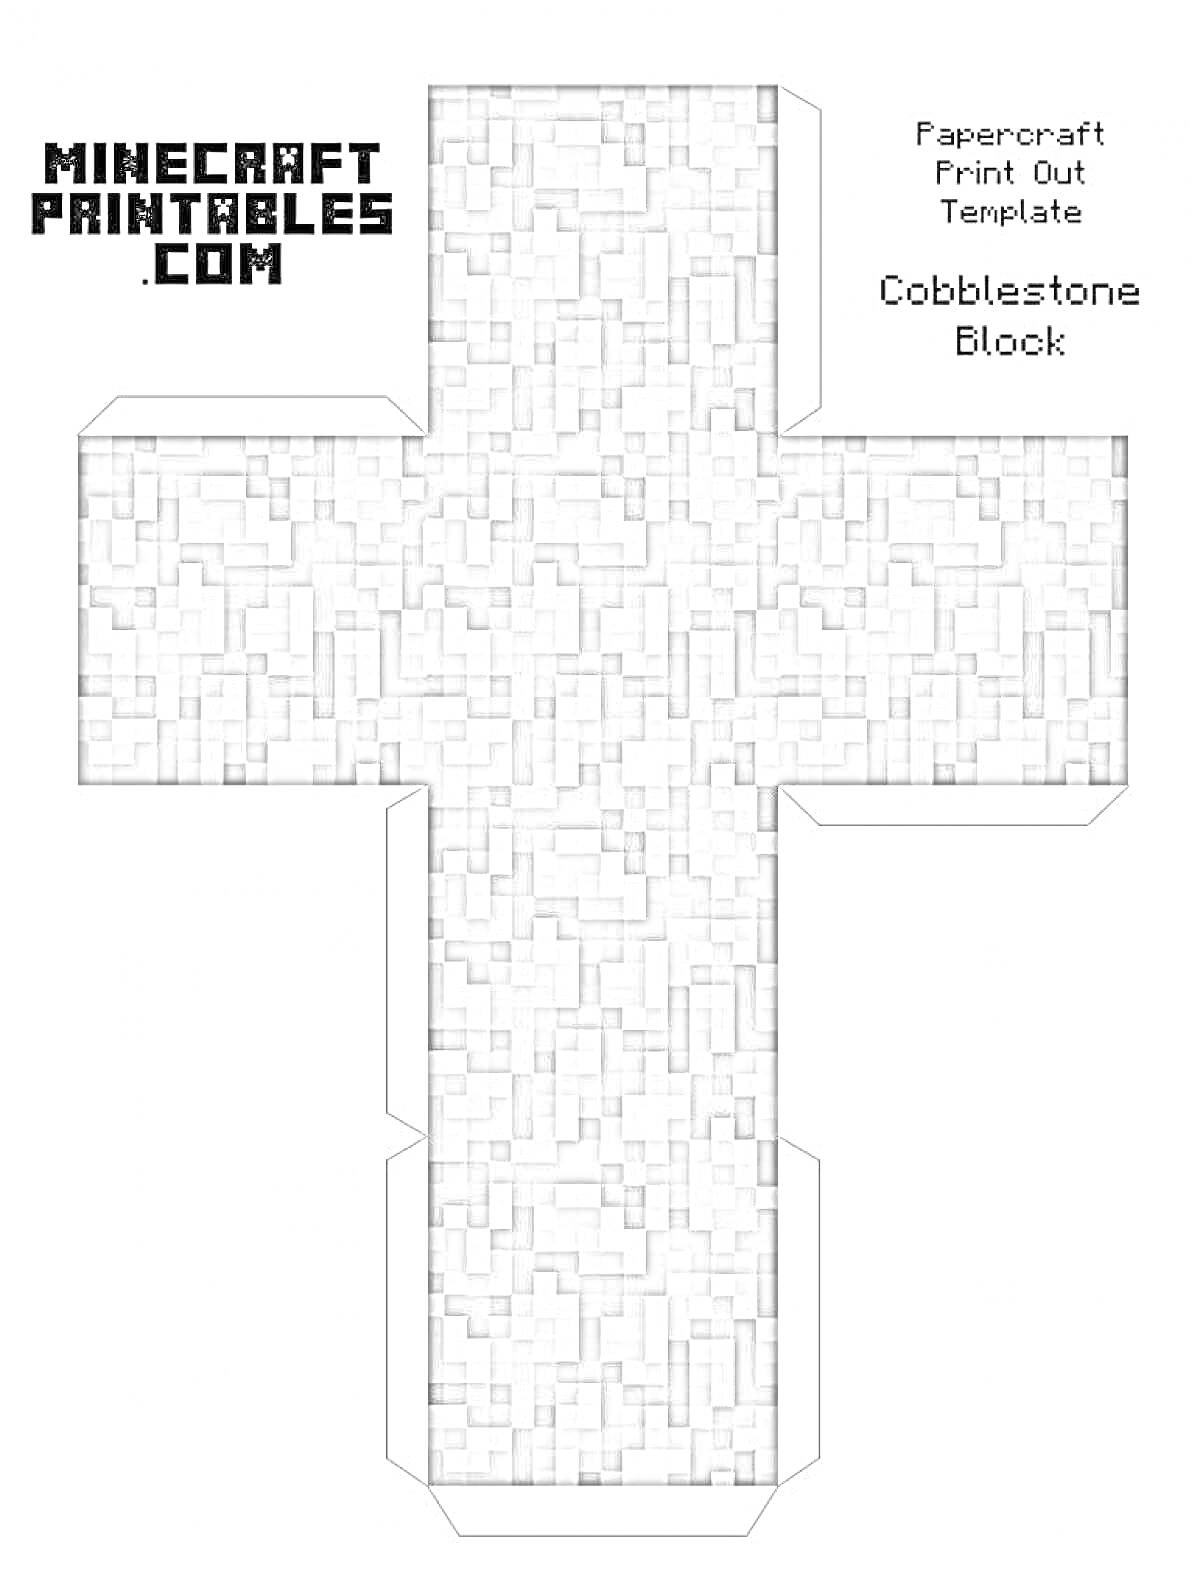 Раскраска Шаблон для вырезания и складывания булыжникового блока (Cobblestone Block) из Minecraft